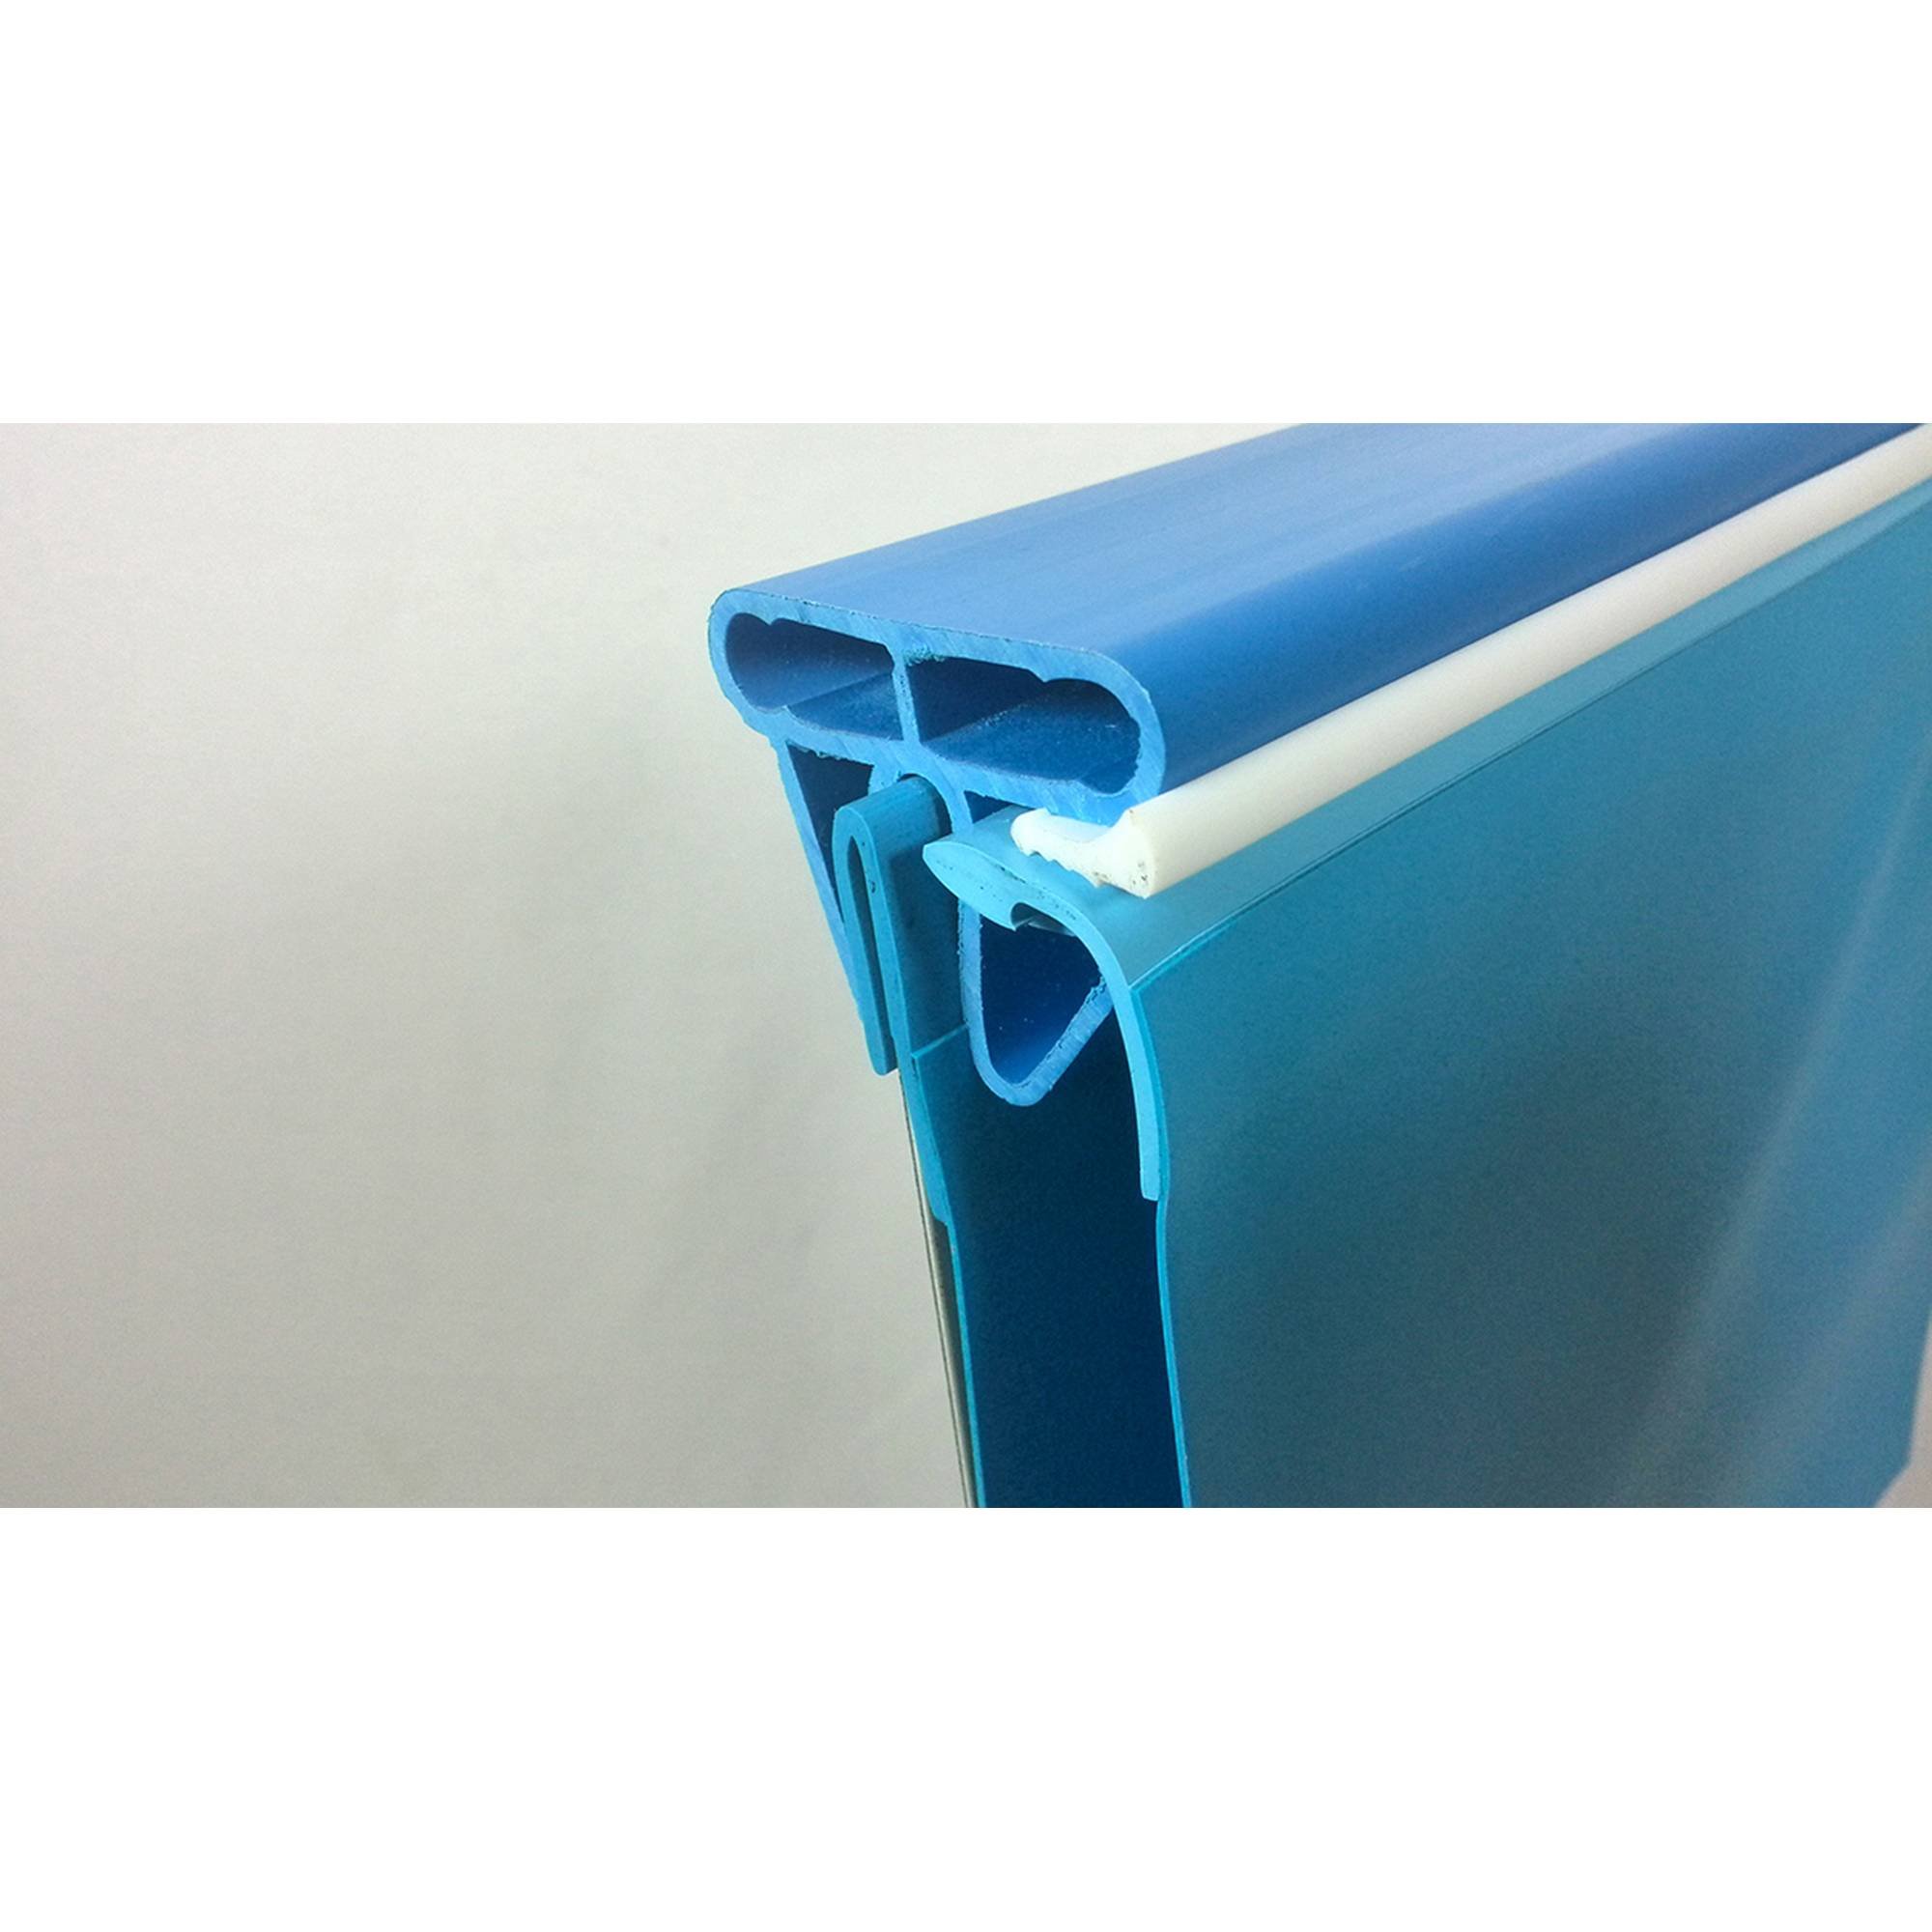 Stahlwandpool rund Exklusiv 450x120 cm, Stahl 0,6 mm weiß, Folie 0,6 mm blau, Einhängebiese